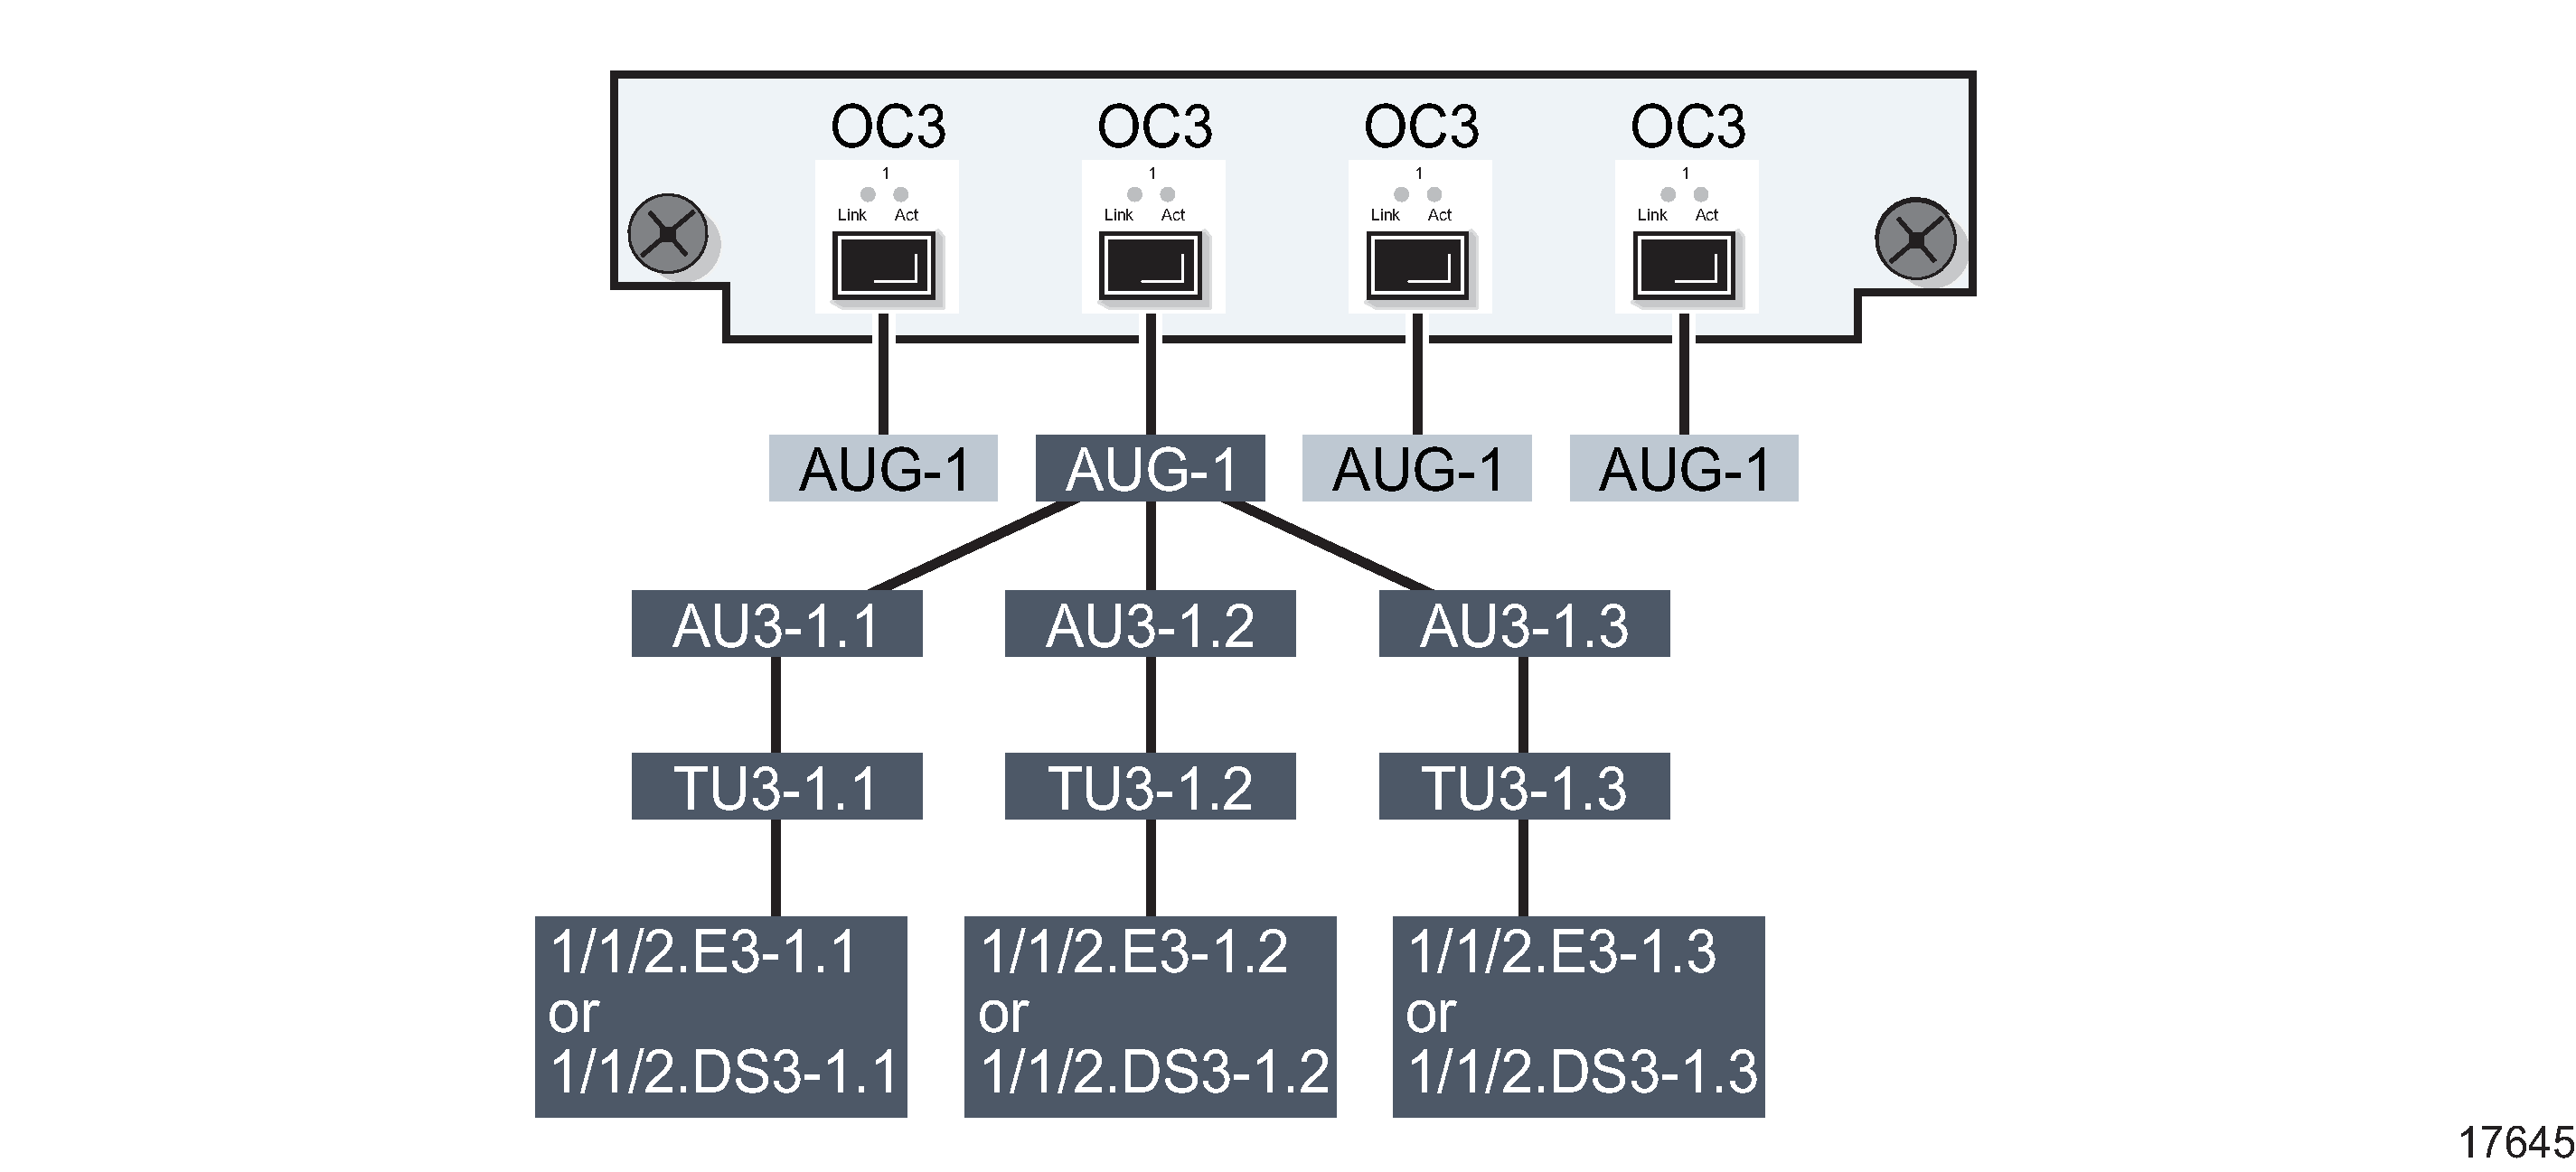 Channelized 4 × OC-3 port structure using AU3/E3 sub-channels